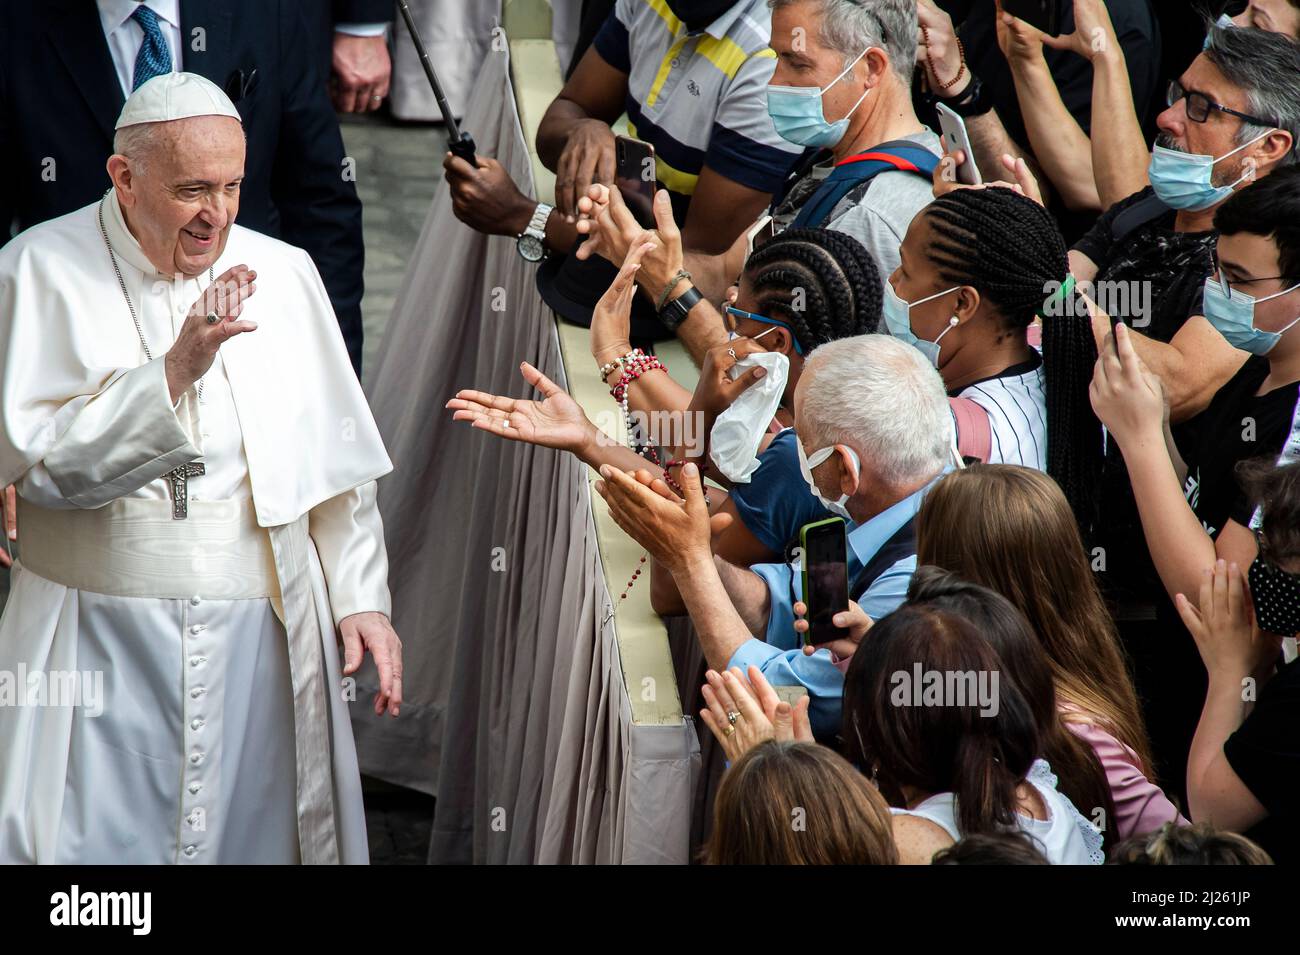 El Papa Francisco se reúne con los fieles al final de una audiencia pública limitada en el patio de San Dámaso en el Vaticano. Foto de stock